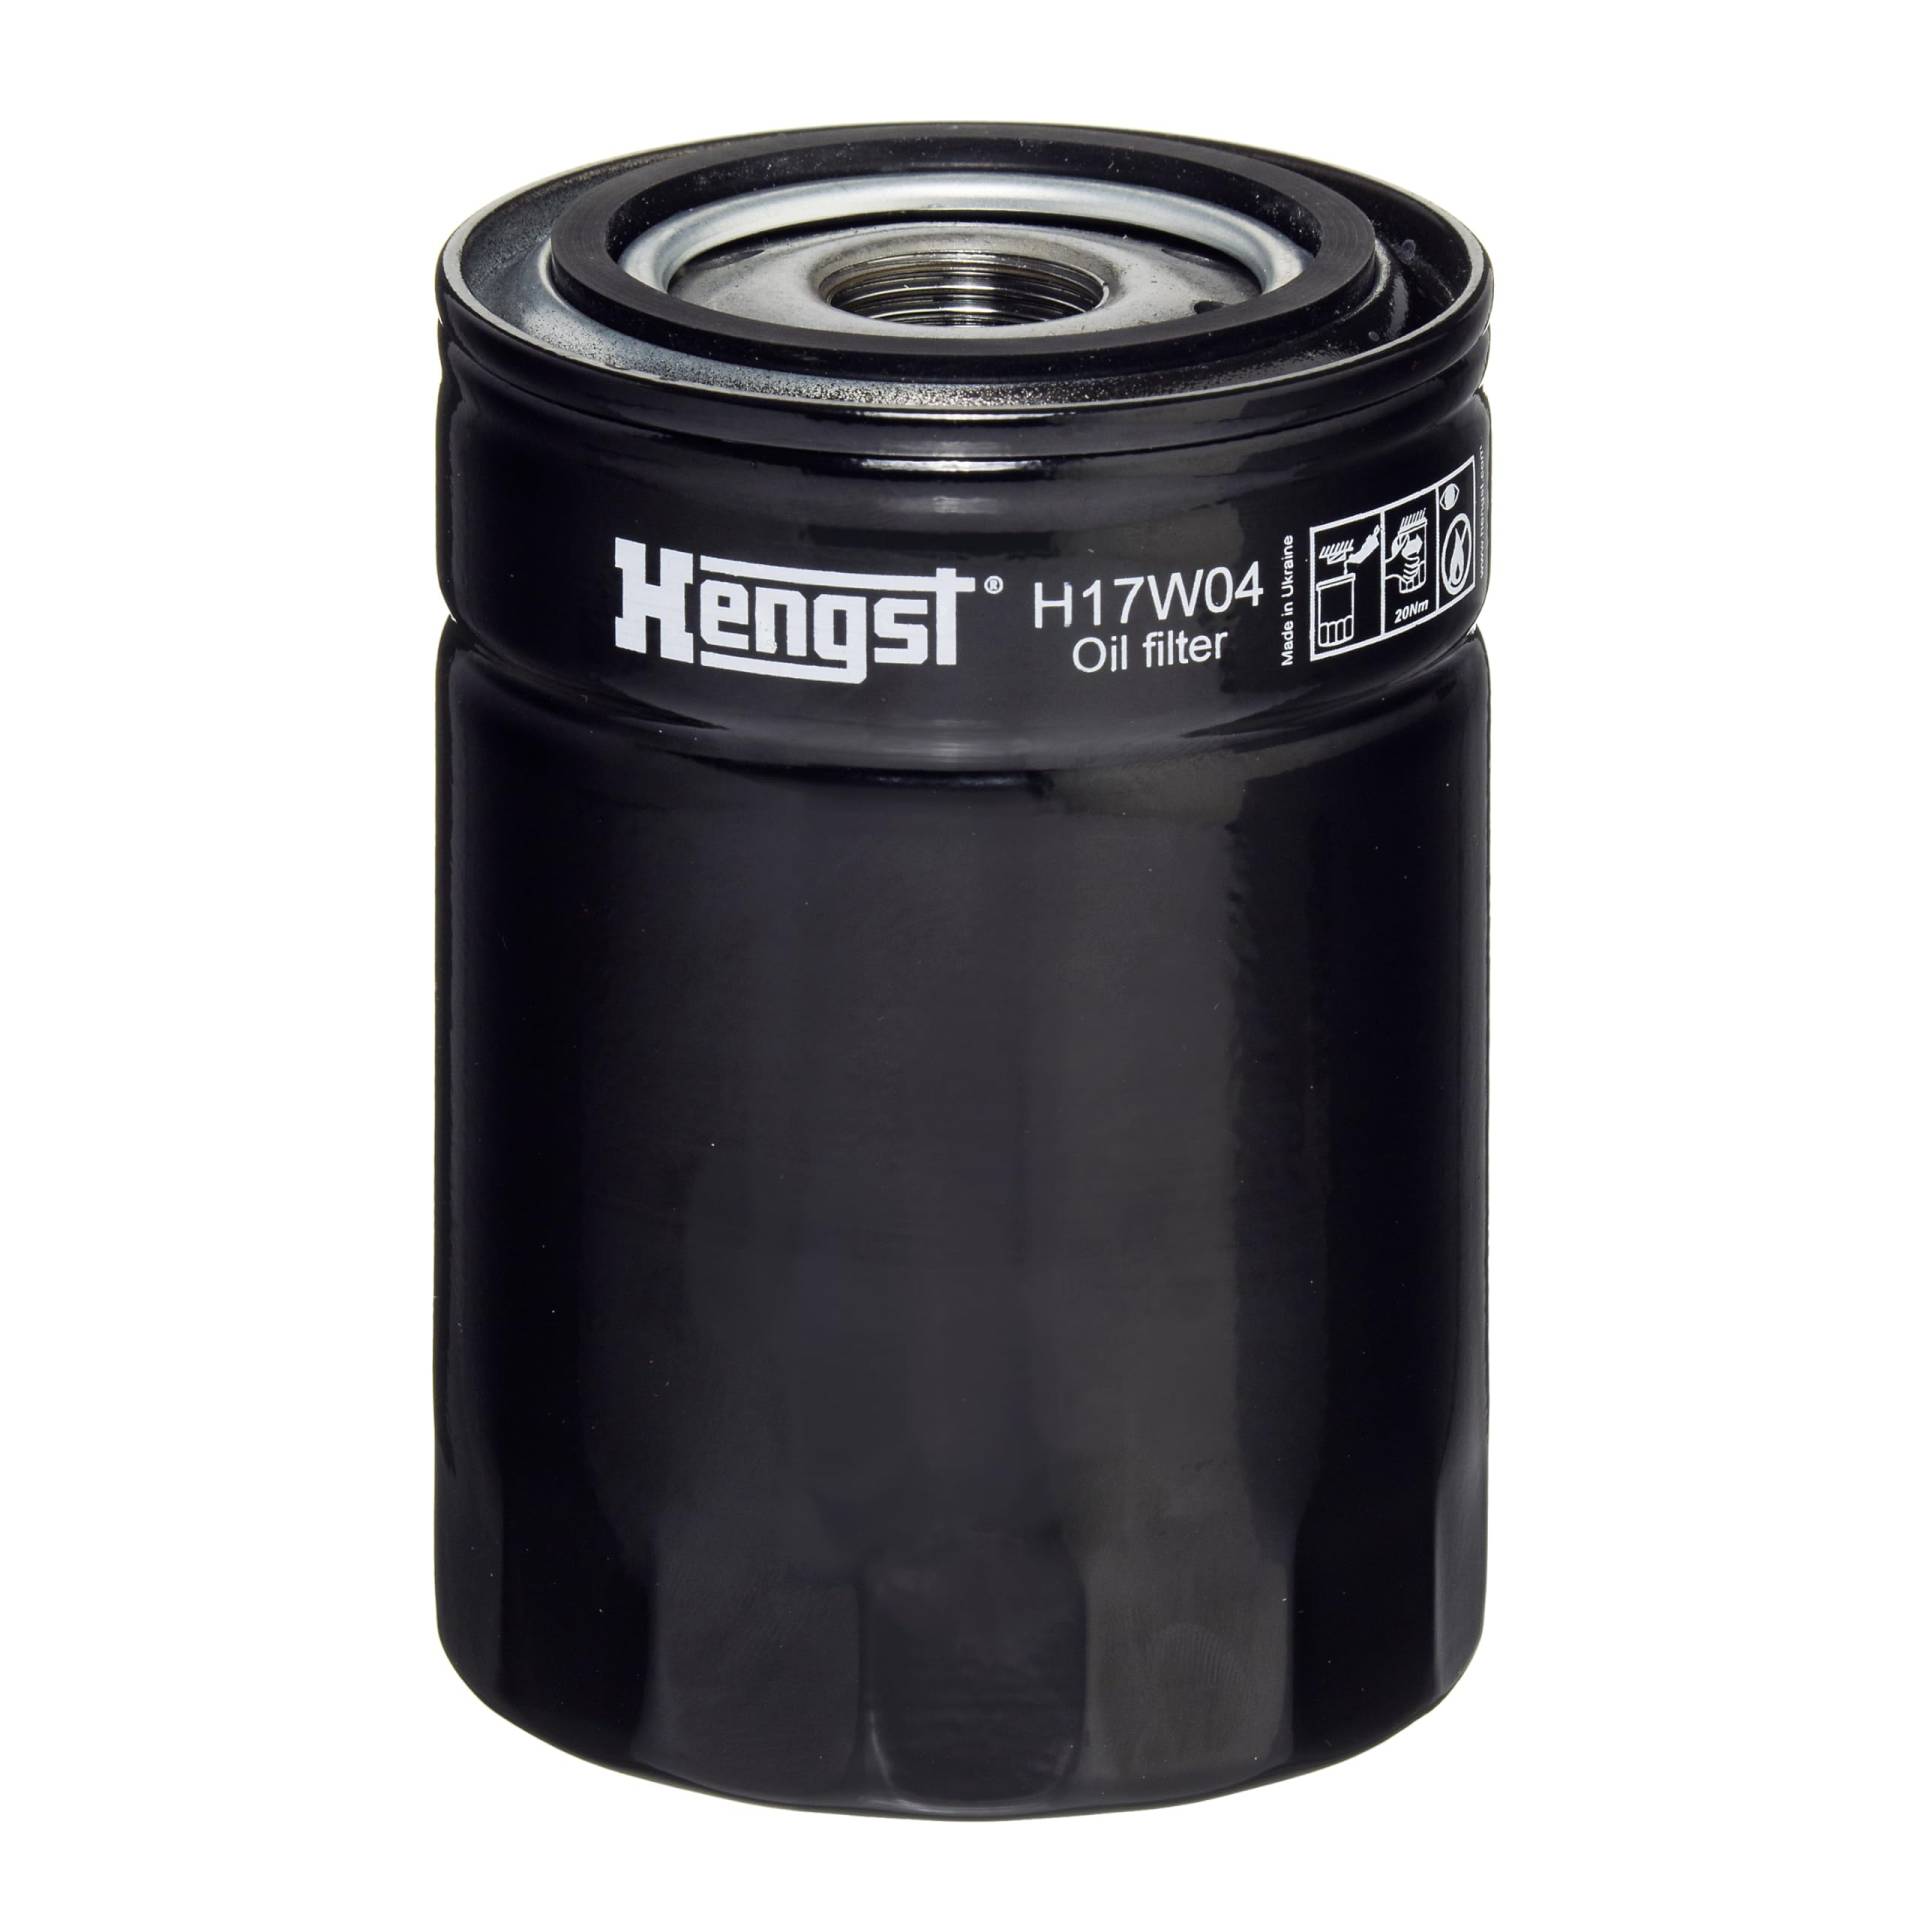 Hengst Filter H17W04 Filter Ölfilter Motorölfilter Filter für 12028495, 97090011-00, 97125401-03 von Hengst